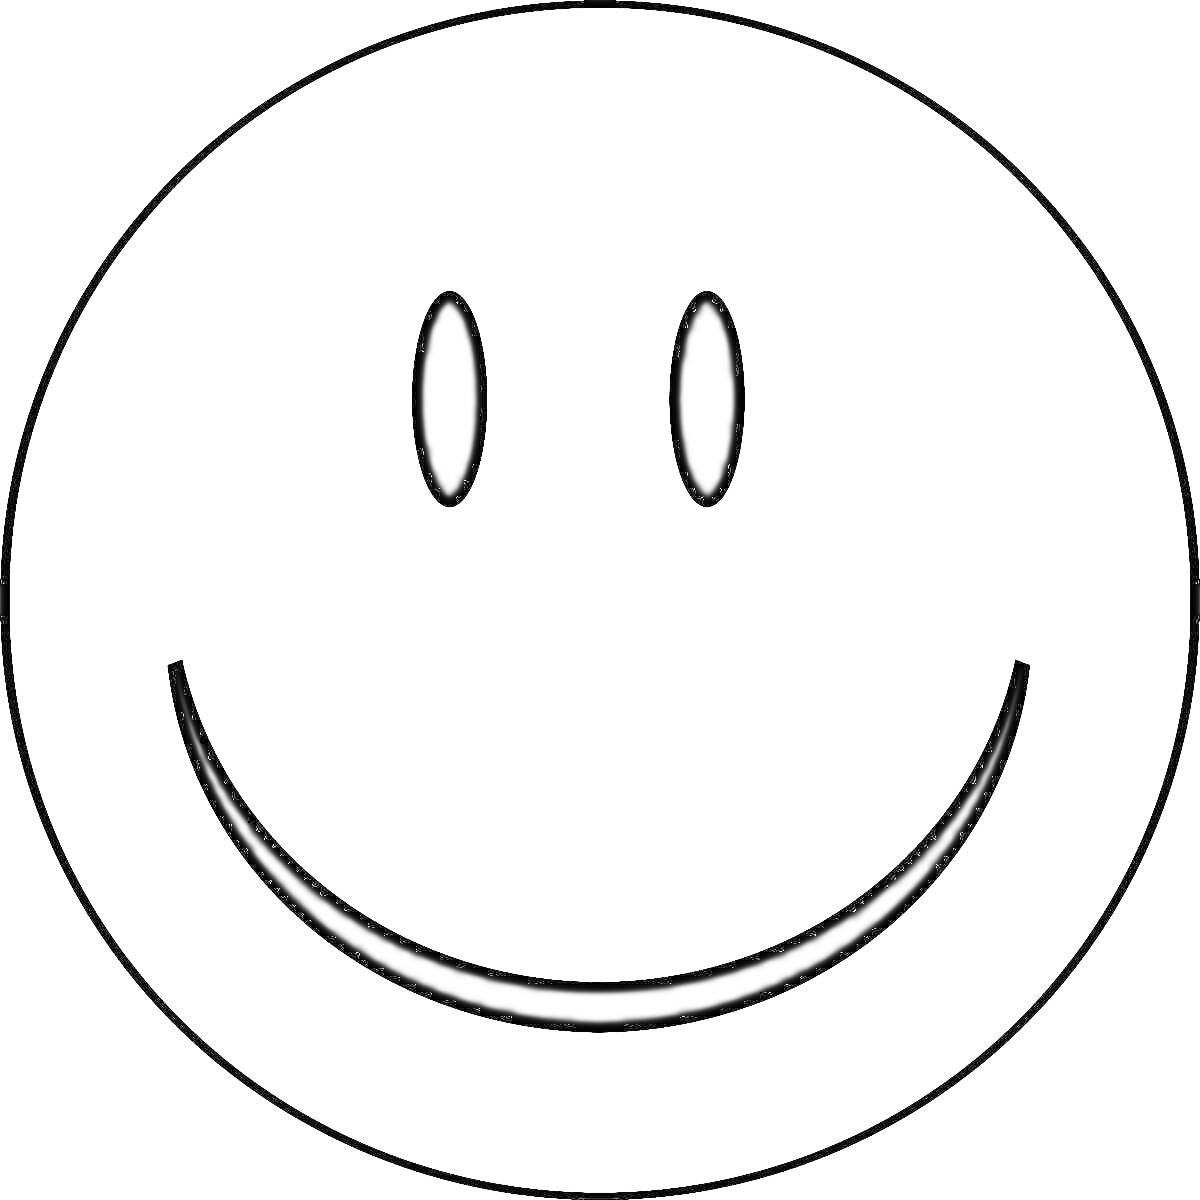 Простая смайлик-картинка с кругом, двумя овальными глазами и улыбающимся ртом